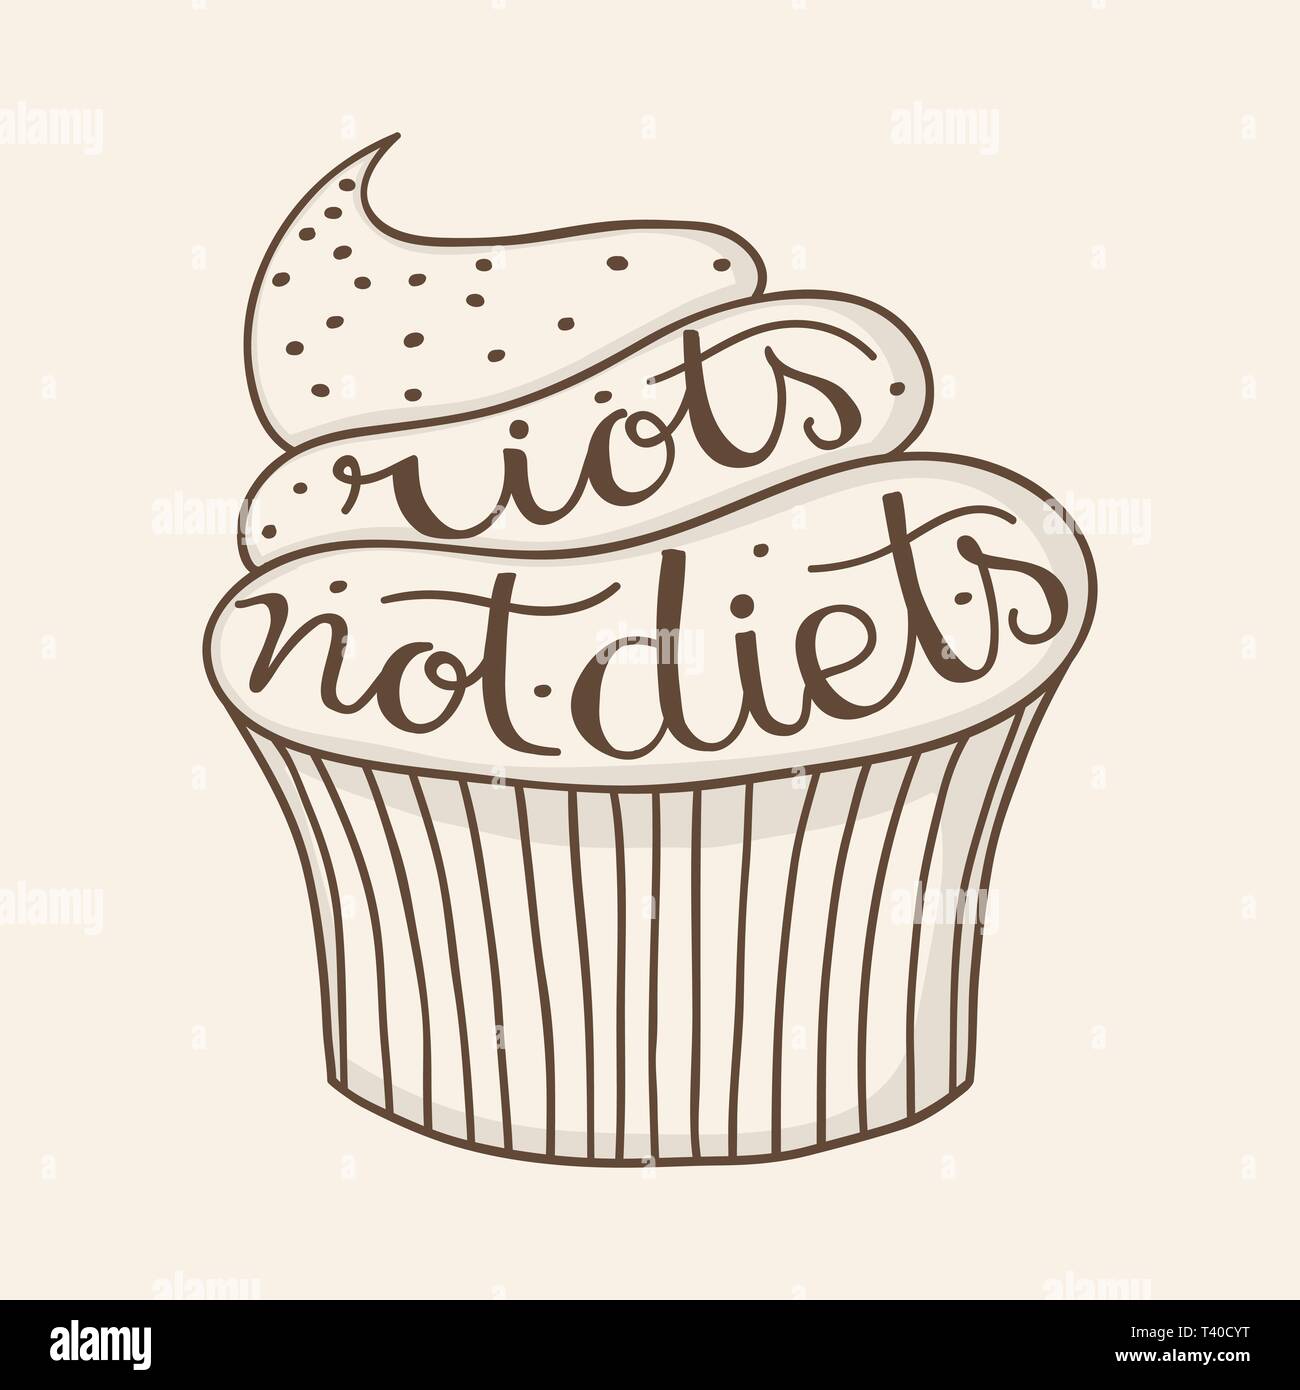 Sommosse diete non citazione scritta a mano su un grazioso cupcake muffin o. Illustrazione Vettoriale